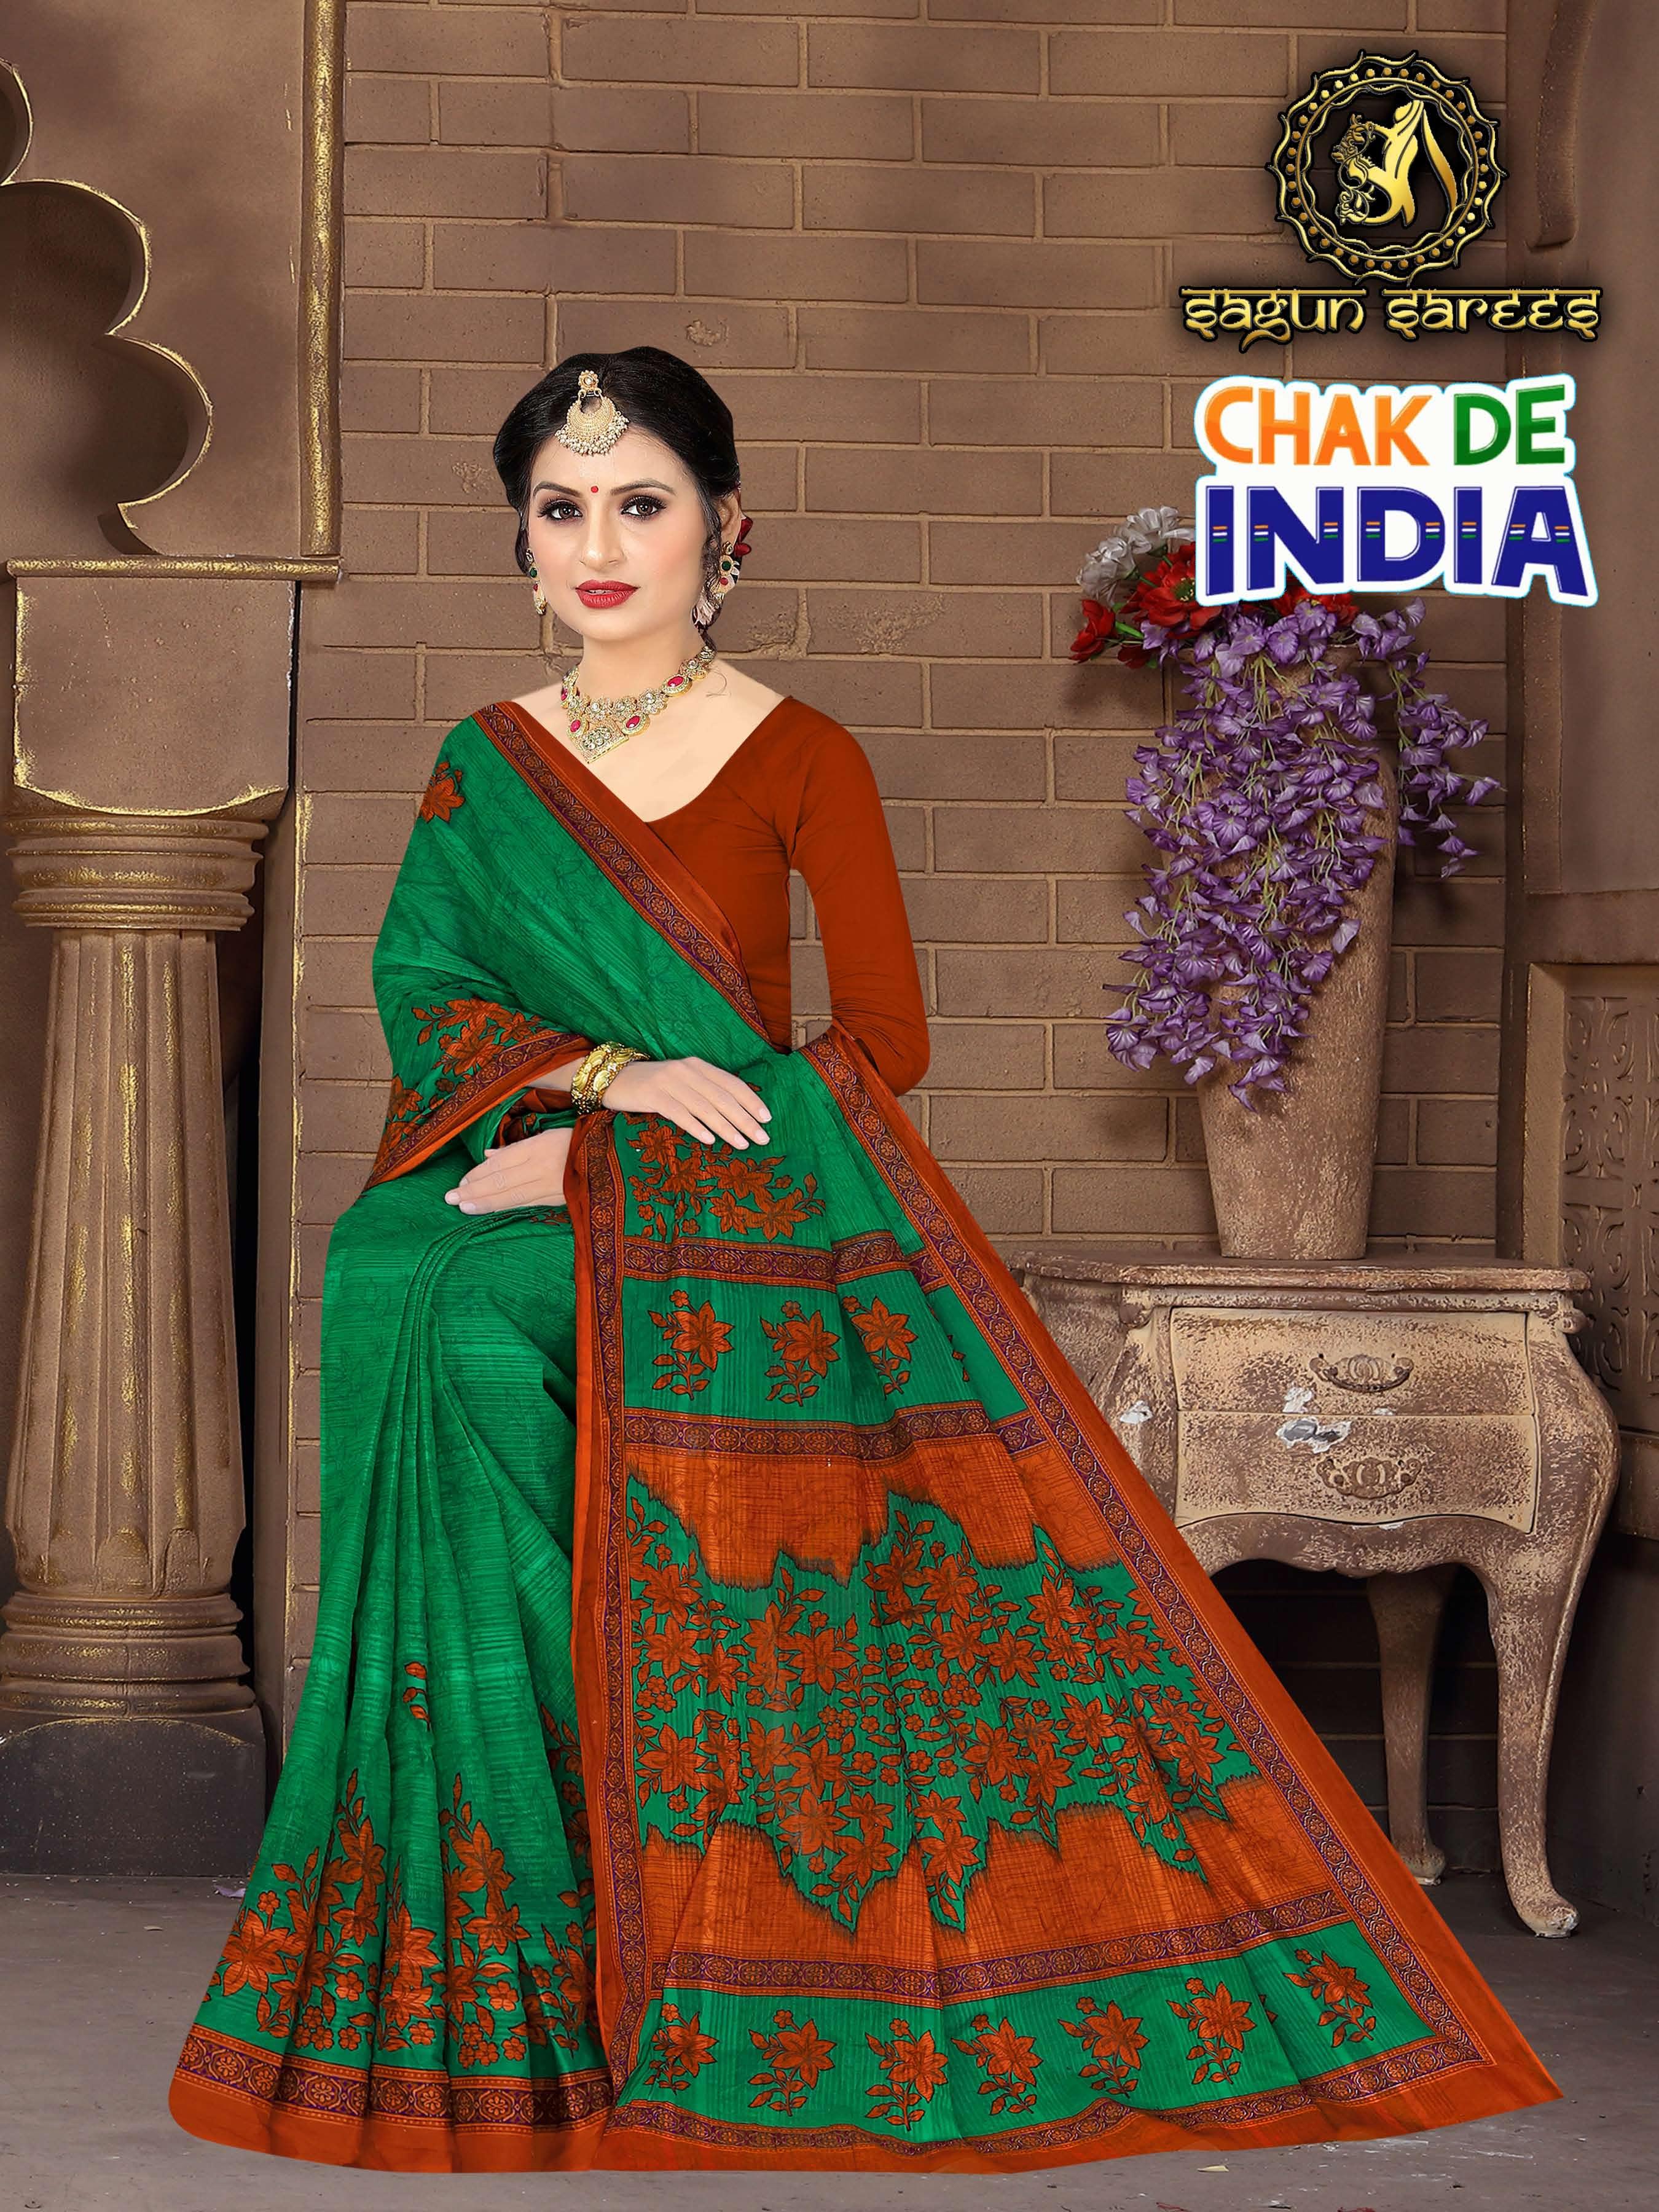 Chak De India (SGUN)